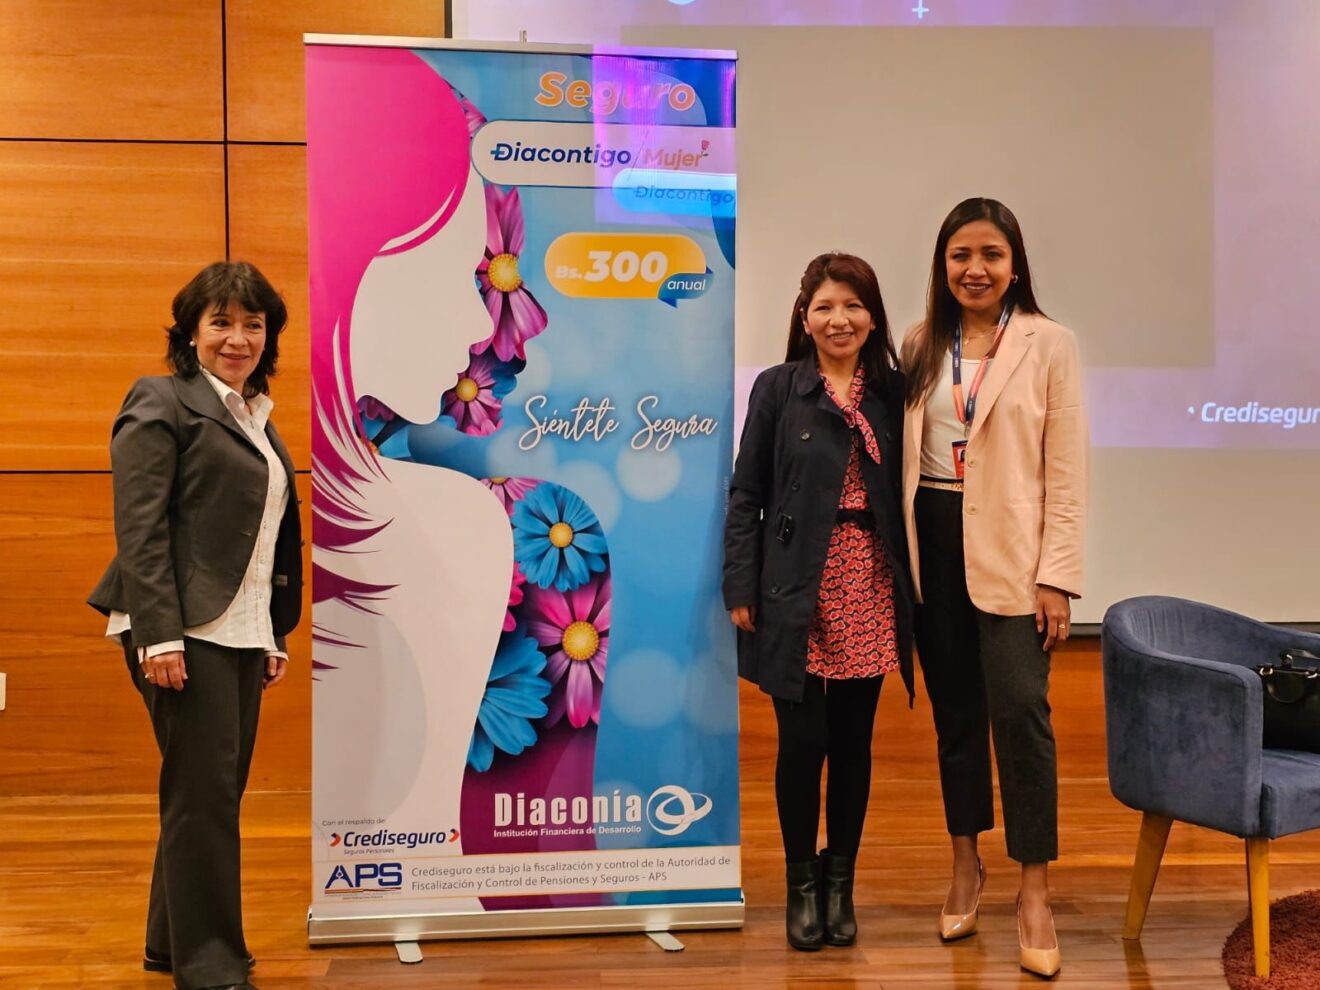 Diacontigo Mujer, Crediseguro y Diaconía lanzan el seguro médico anual con visión de género por Bs 300